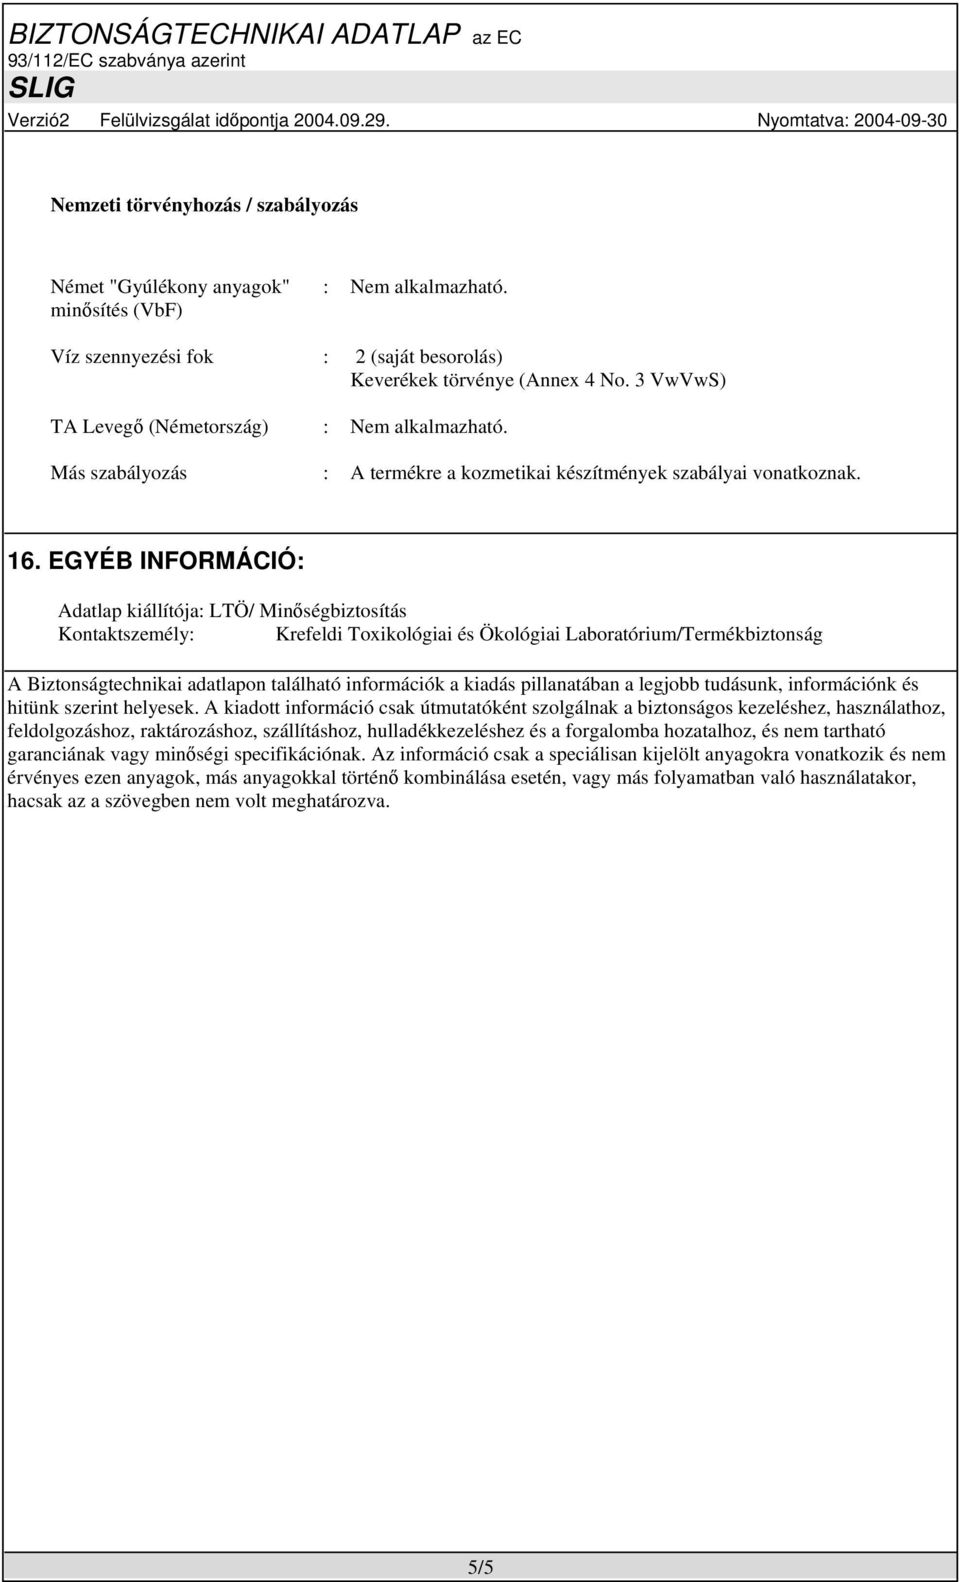 EGYÉB INFORMÁCIÓ: Adatlap kiállítója: LTÖ/ Minőségbiztosítás Kontaktszemély: Krefeldi Toxikológiai és Ökológiai Laboratórium/Termékbiztonság A Biztonságtechnikai adatlapon található információk a